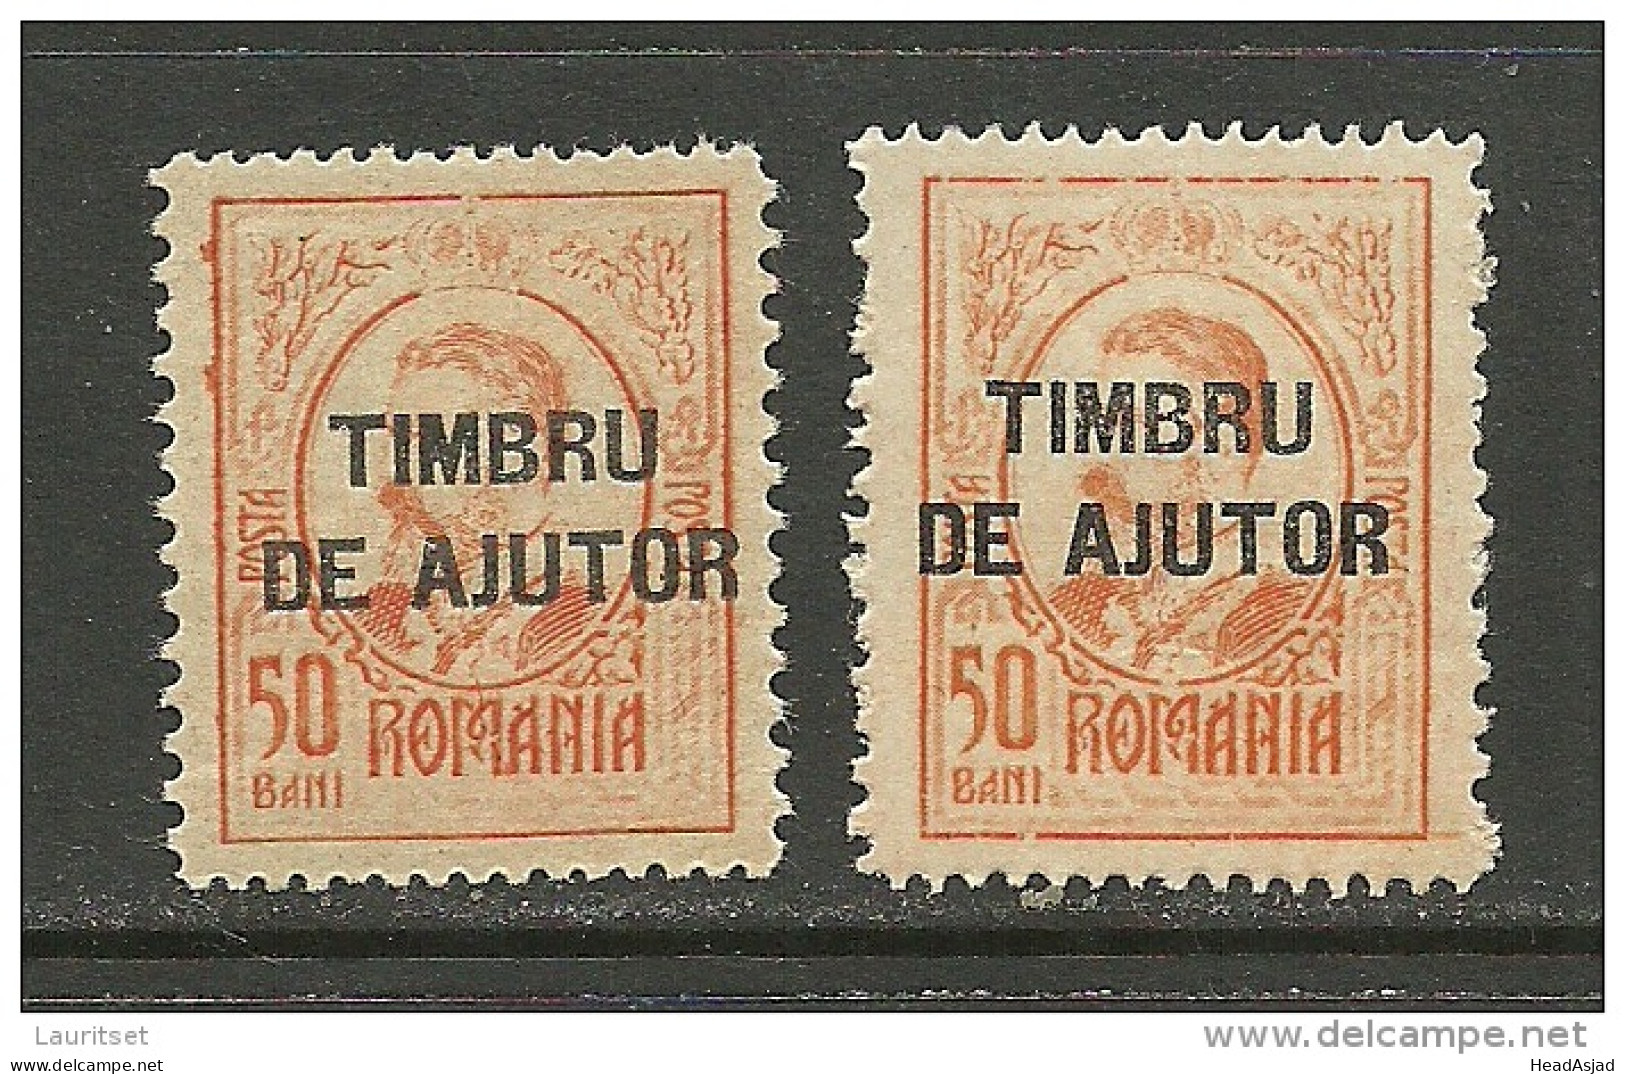 ROMANIA Rumänien 1915 Revenue Stamps Steuermarken 50 Bani, 2 Exemplares * - Fiscaux